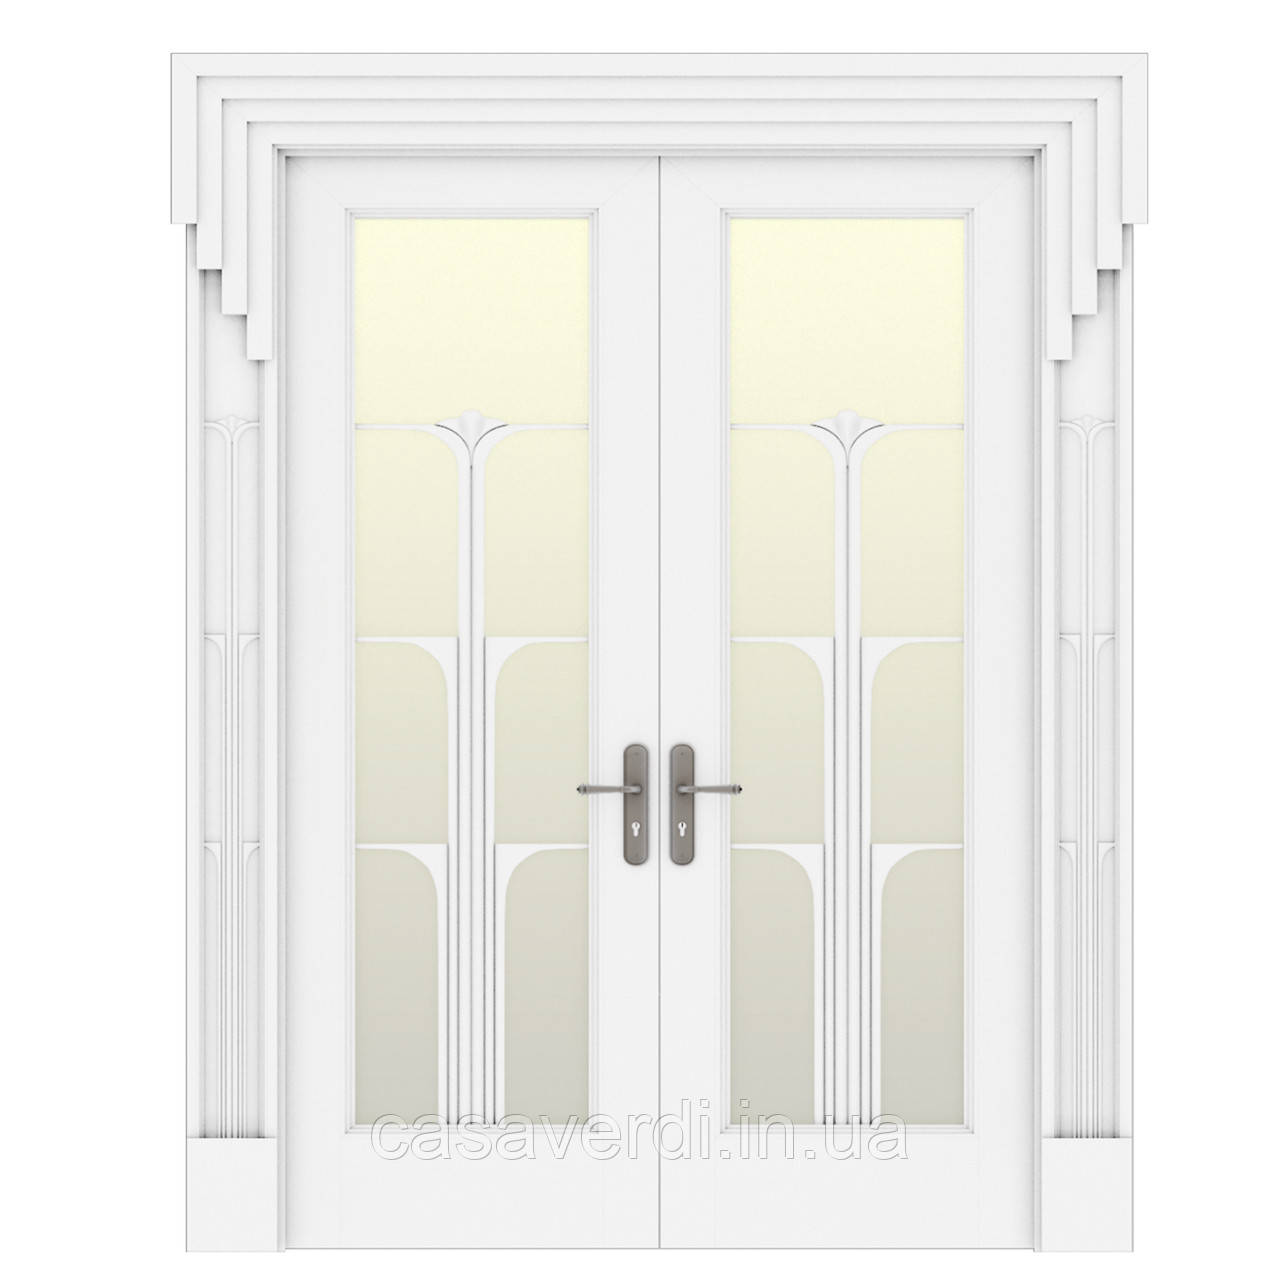 Межкомнатная дверь Casa Verdi Conte 10МДФ белая со стеклом